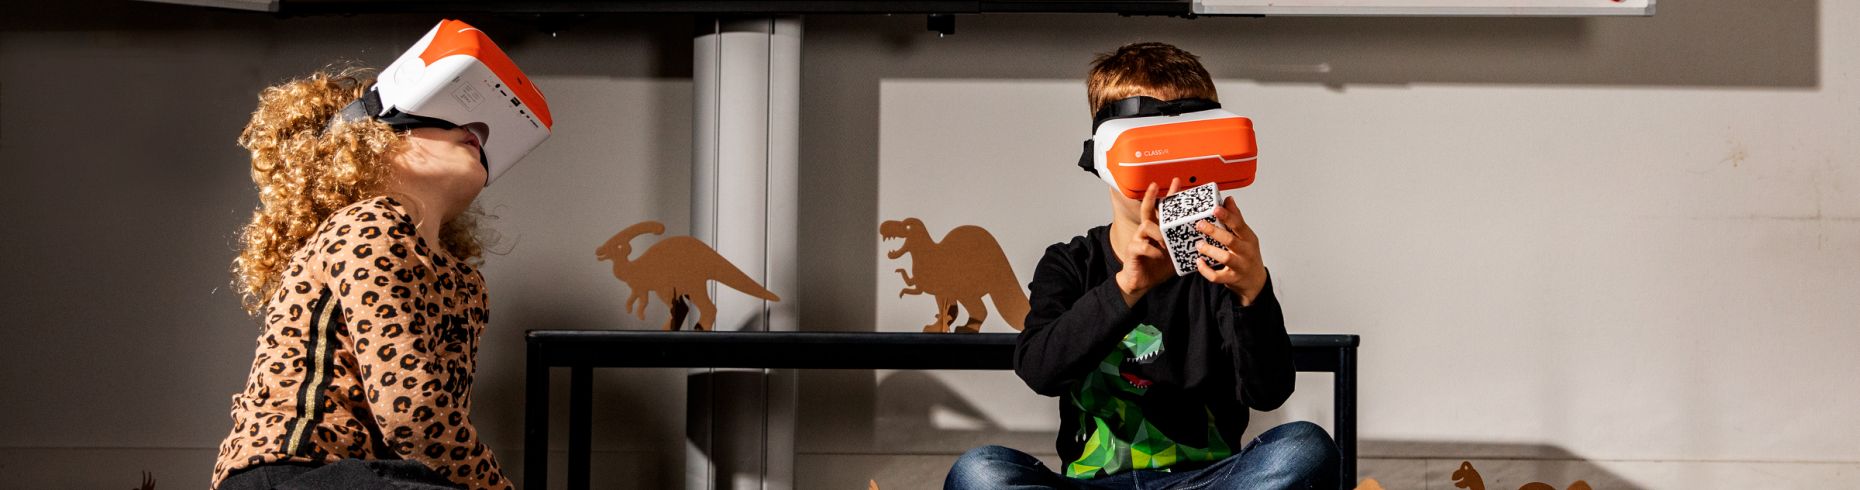 Inspiratie - Virtual reality in de klas